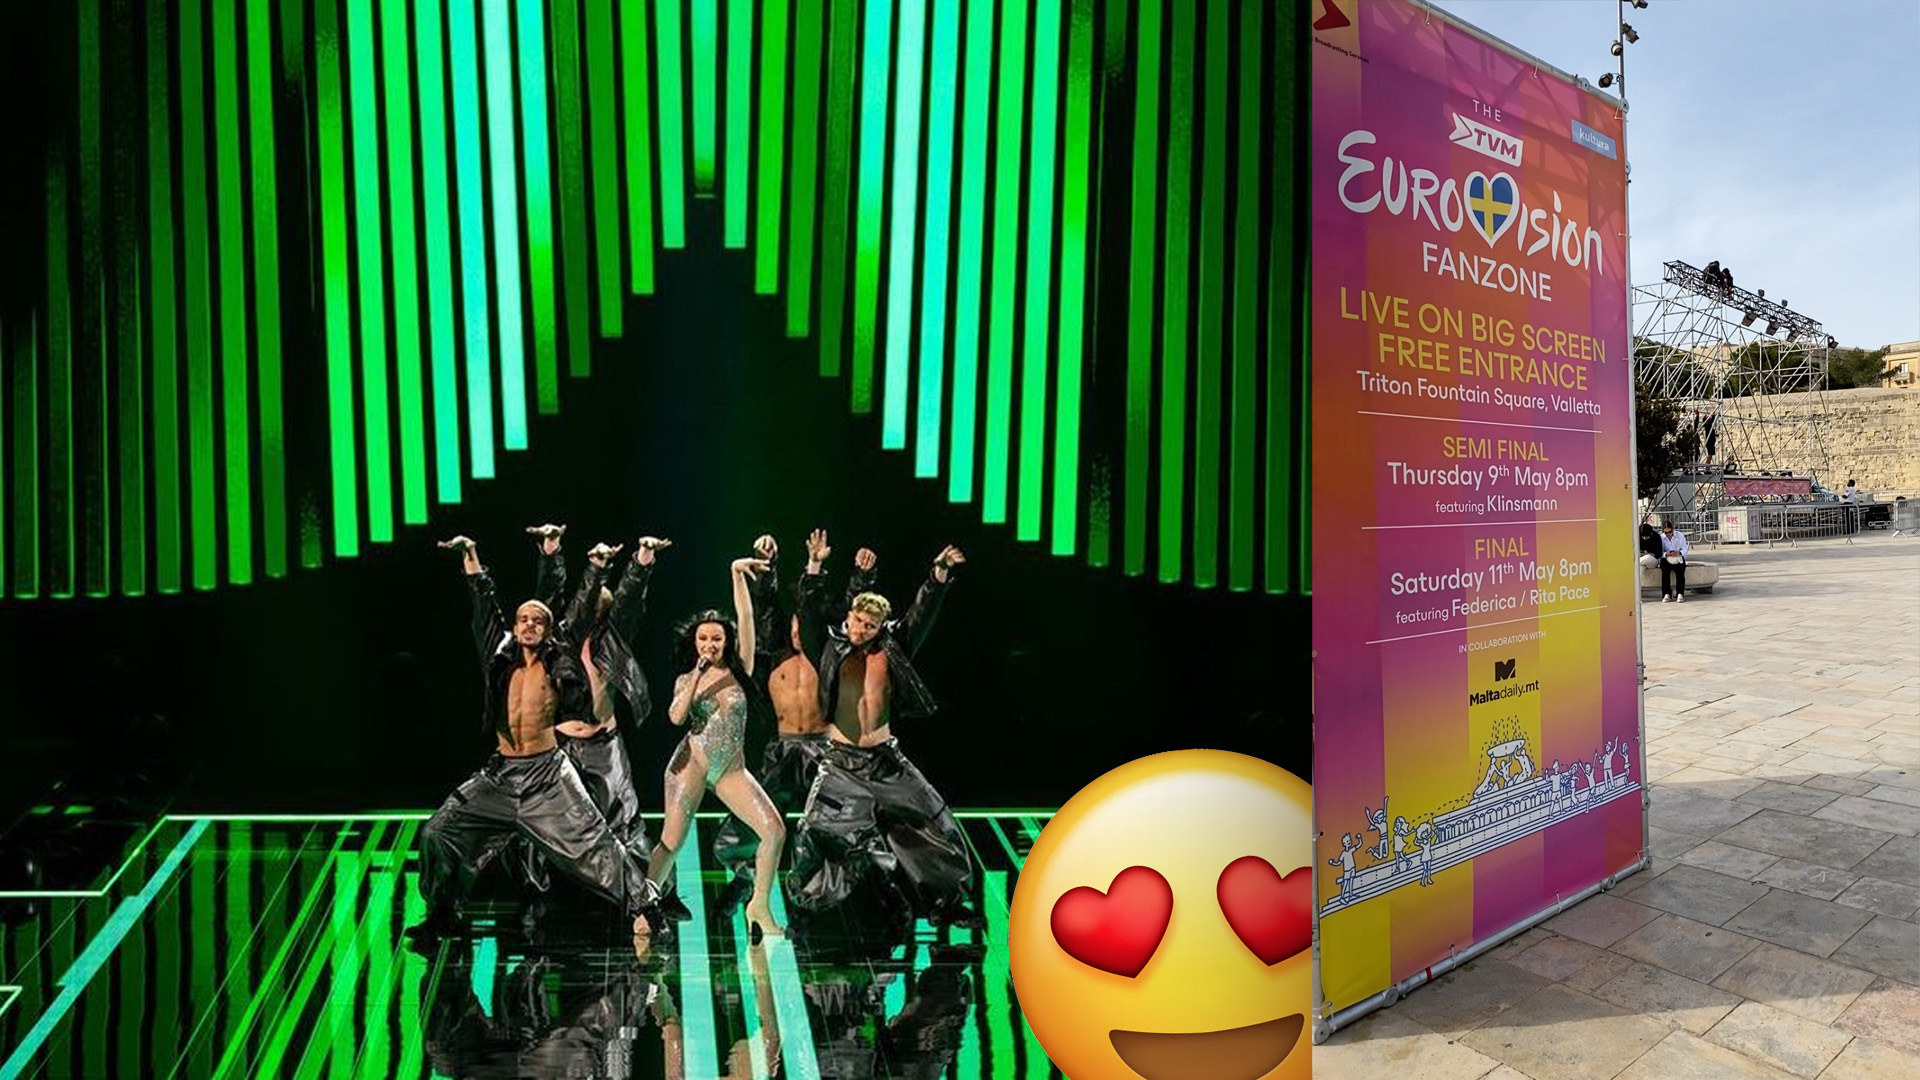 Eurovision Fan Zone at Triton Square STARTS TOMORROW